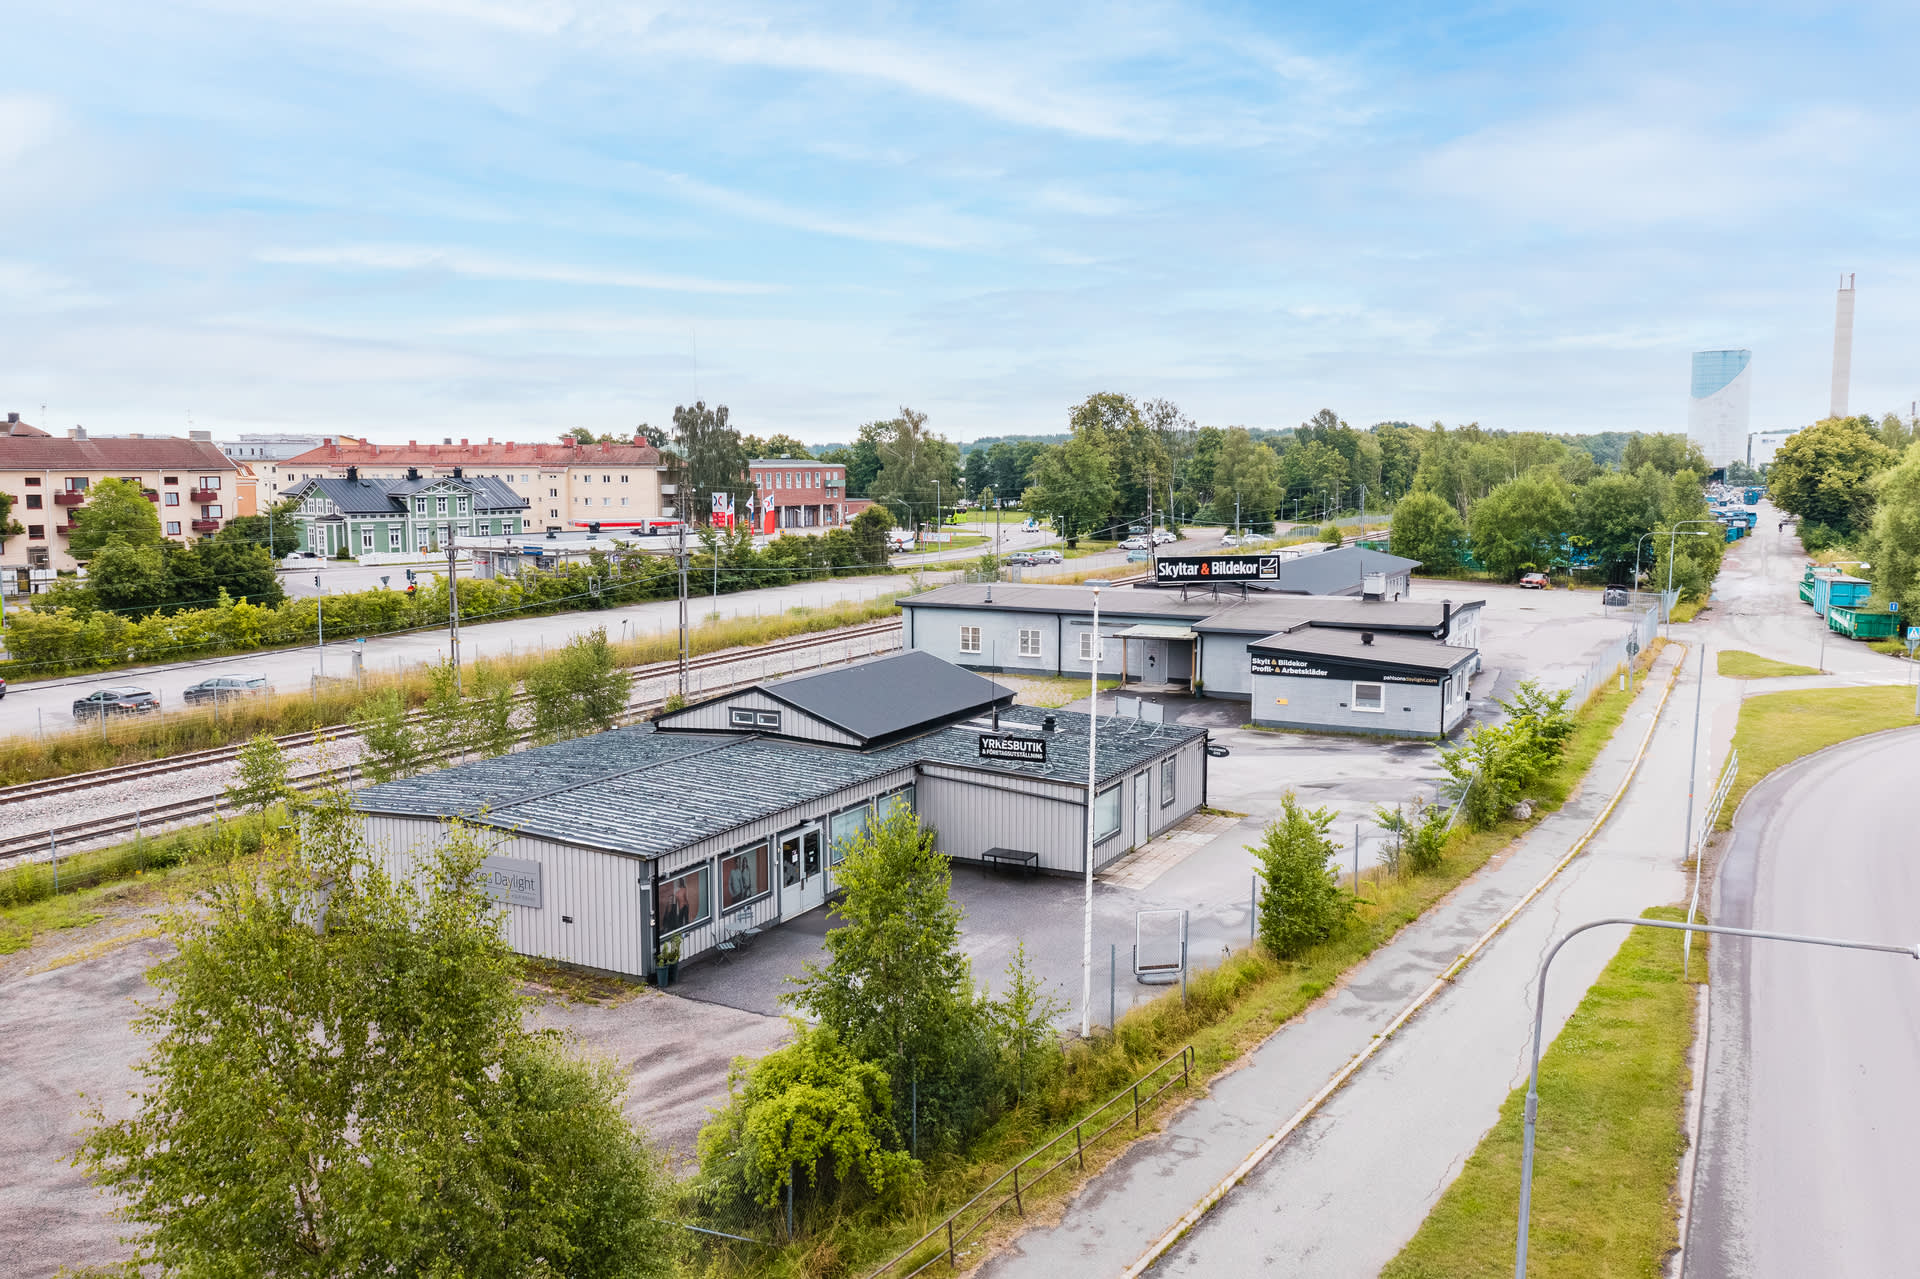 Centralt belägen industrifastighet. På andra sidan järnvägen ligger Nyköpings buss station. Det tar 5 min att promenera till centrum. 

Byggnaden i nerkant innehåller försäljningsyta/butik.